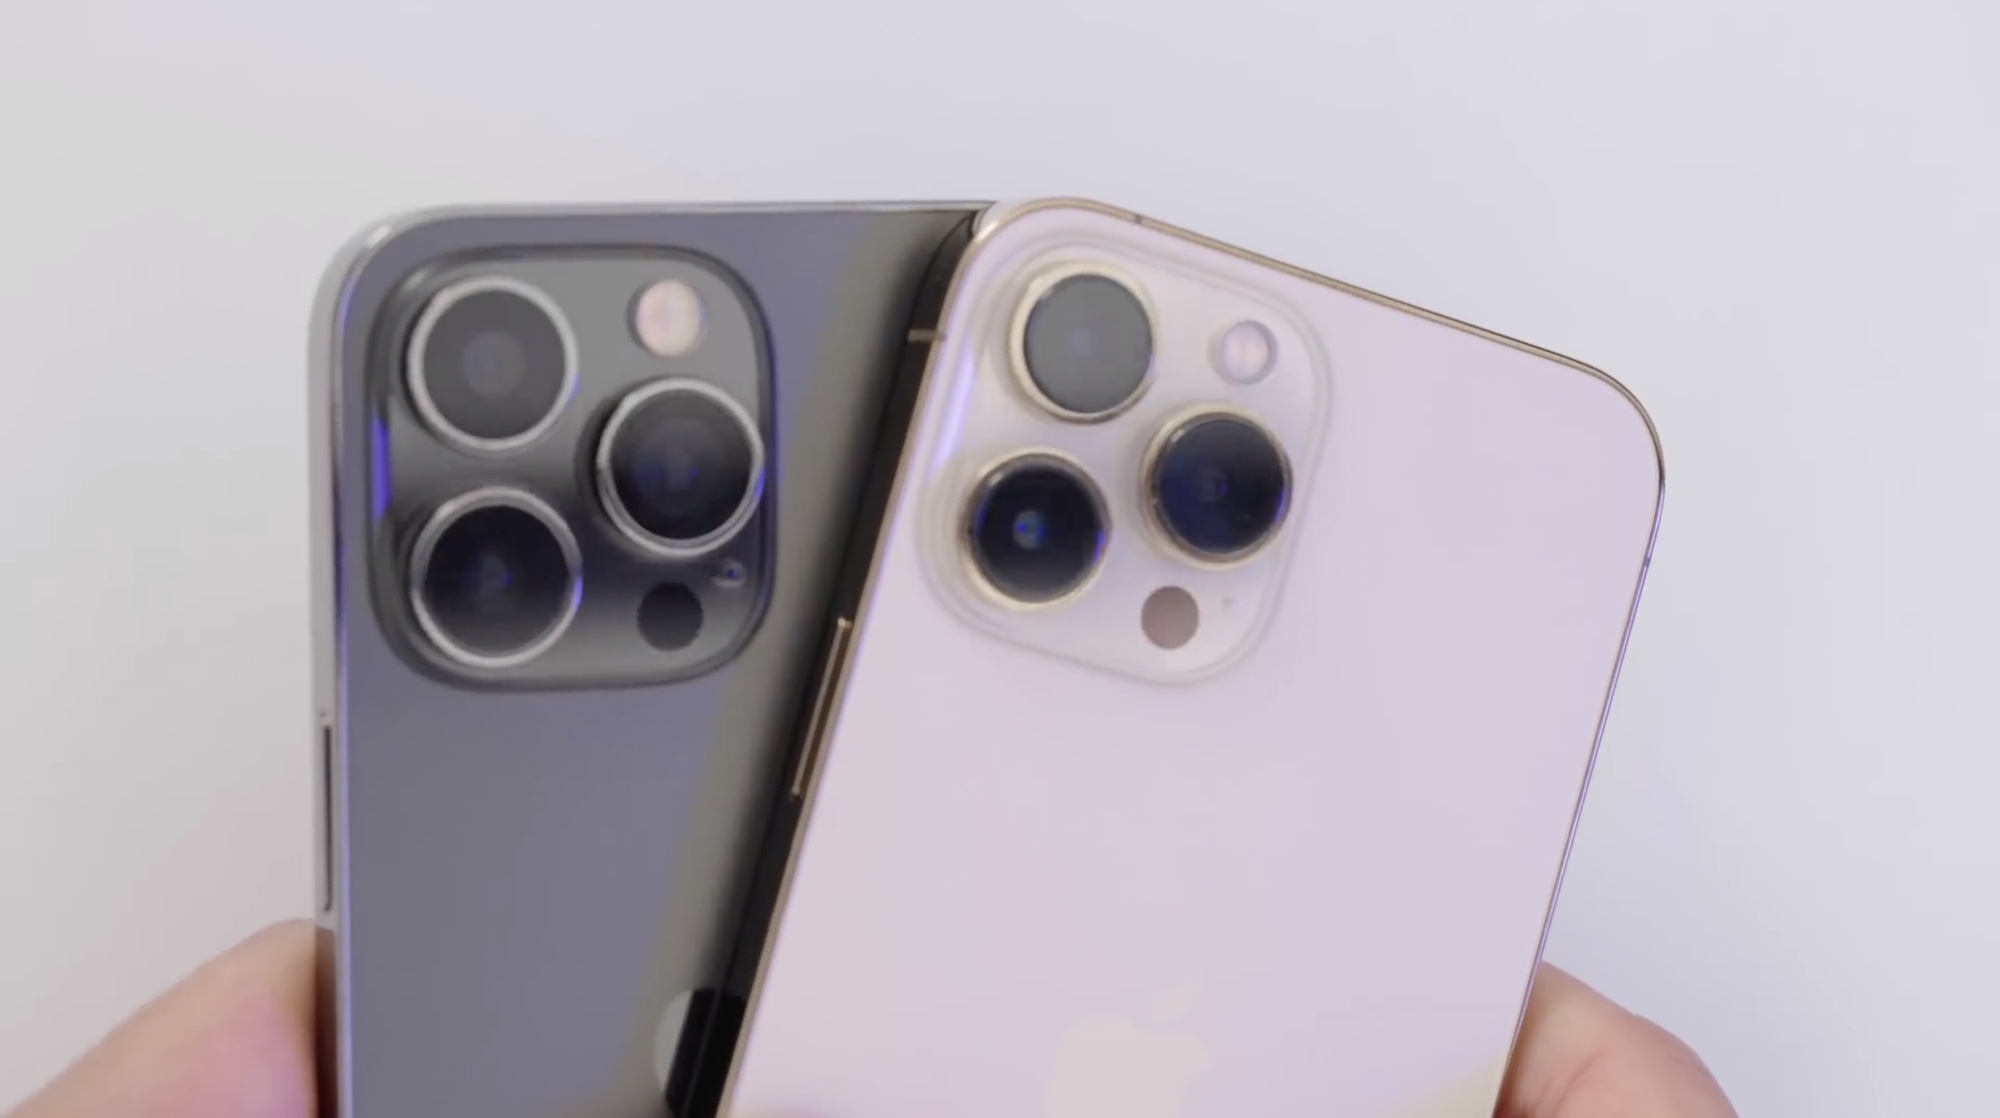 iPhone 14 Pro Max replica unit camera lenses compared to iPhone 13 Pro Max